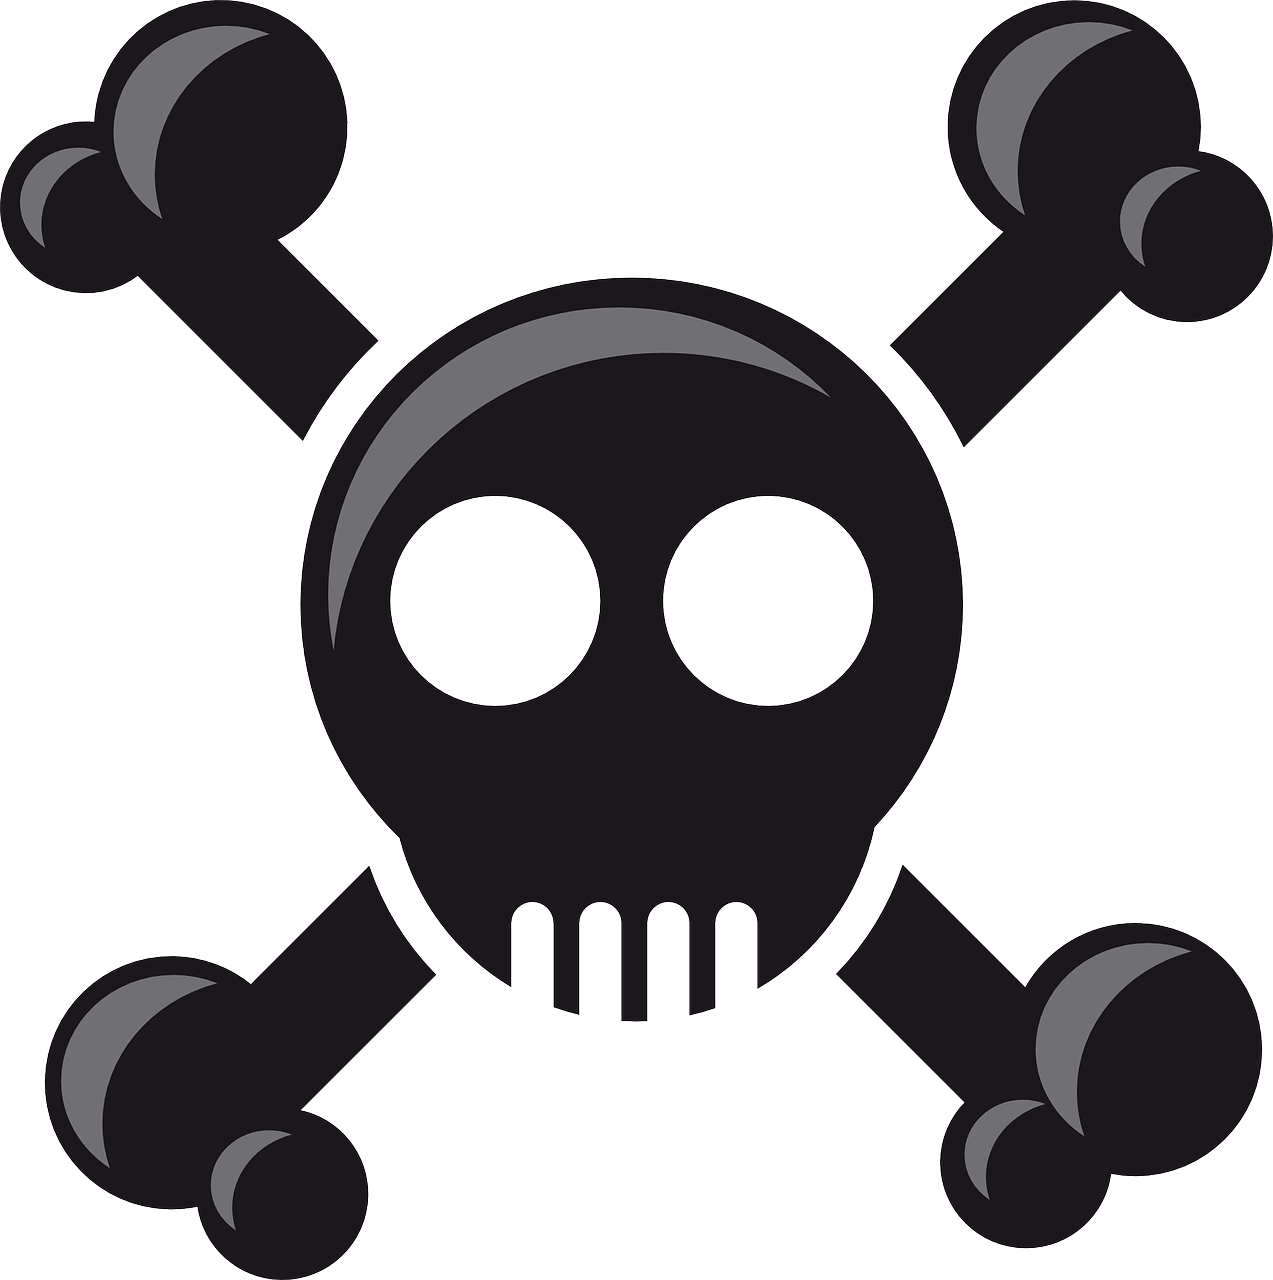 a skull and crossbones symbol